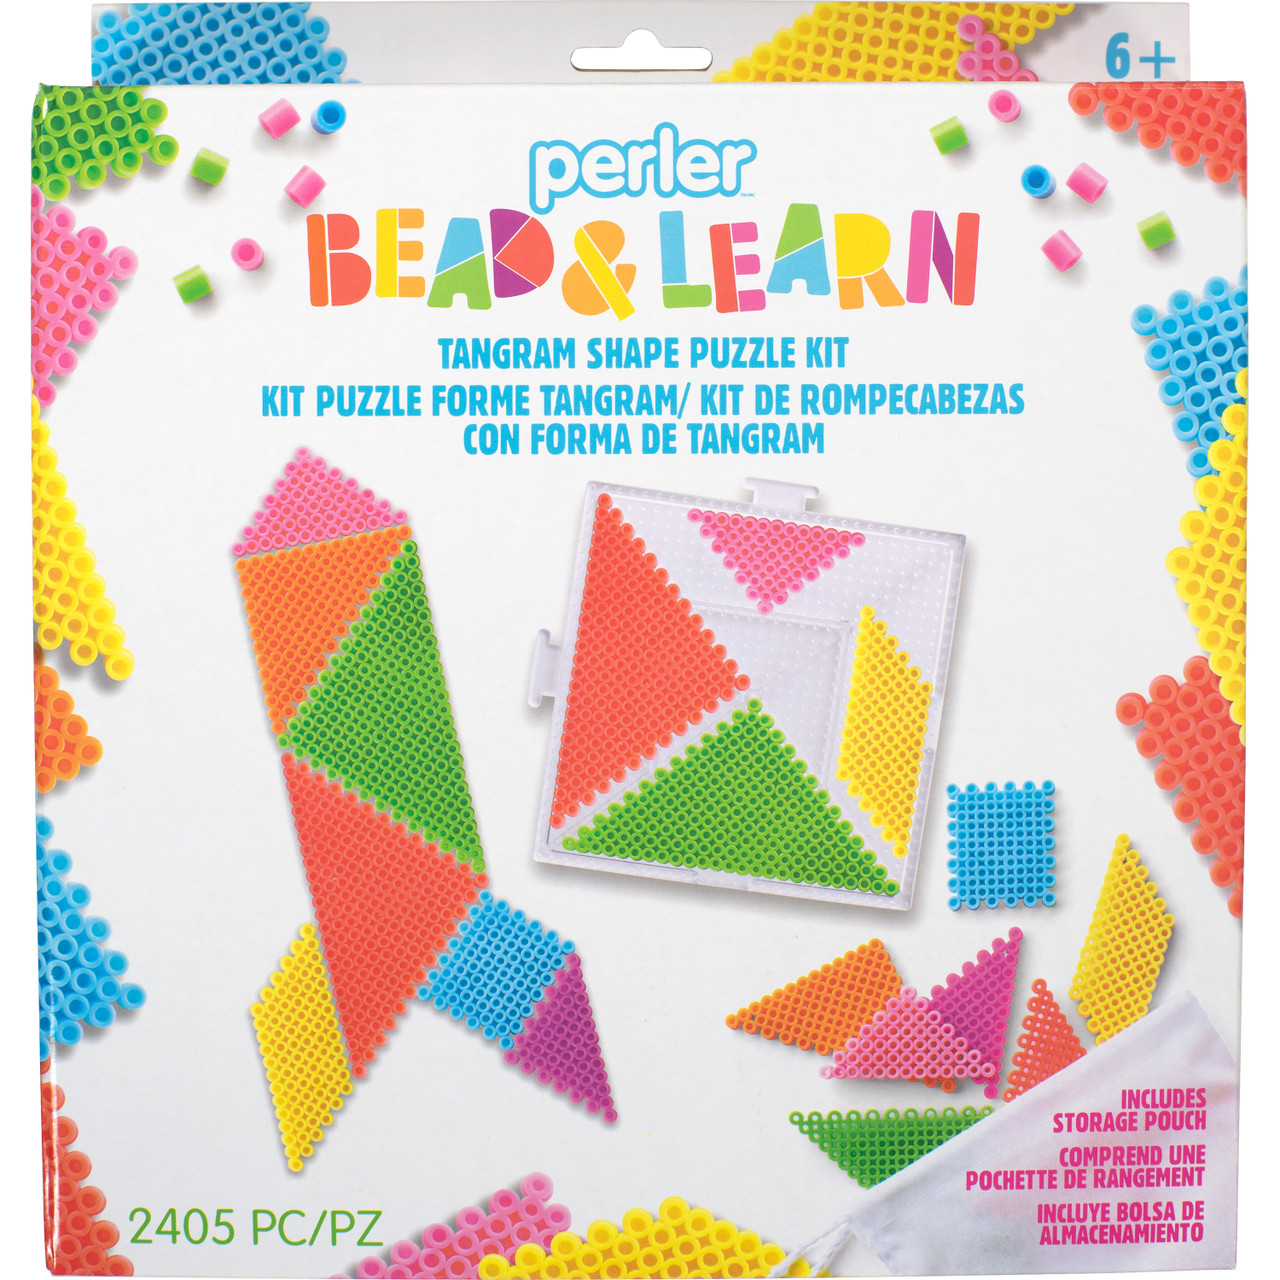 Bead Fun Activity Kit